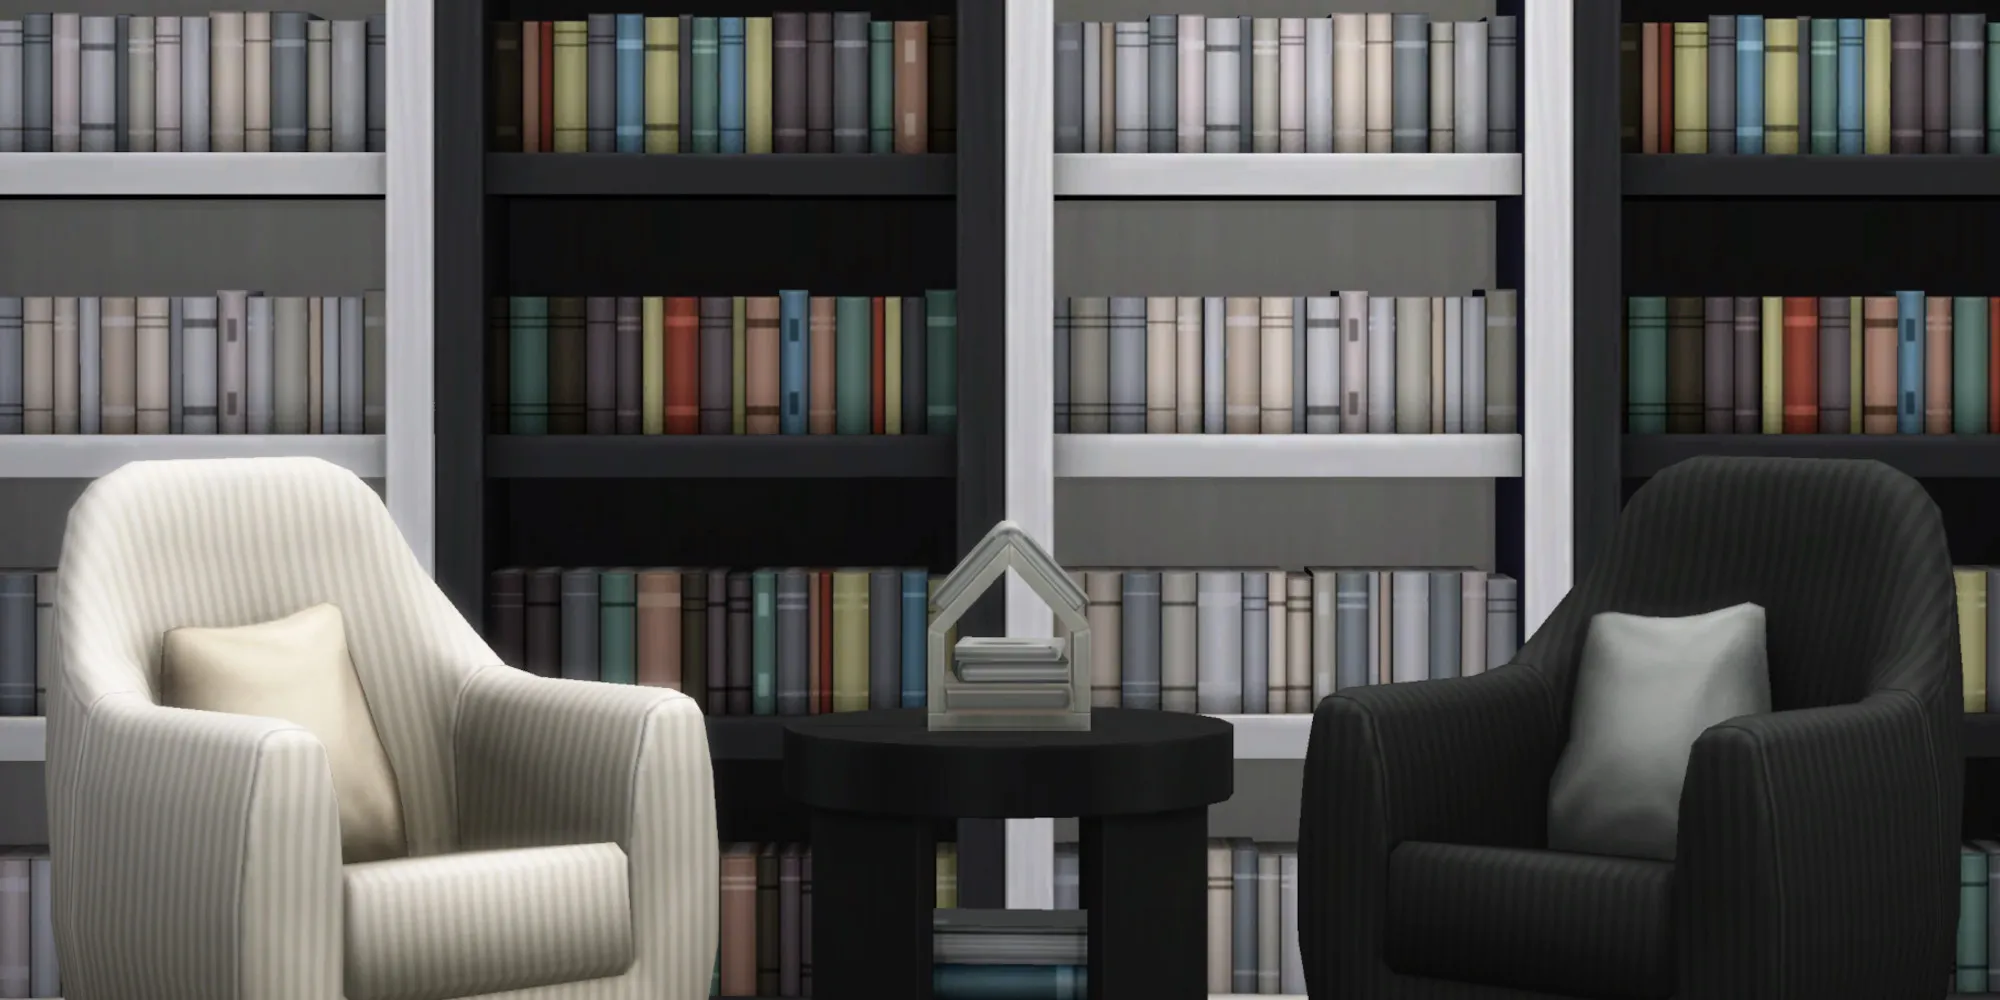 Stanze in The Sims 4 con librerie dal pavimento al soffitto